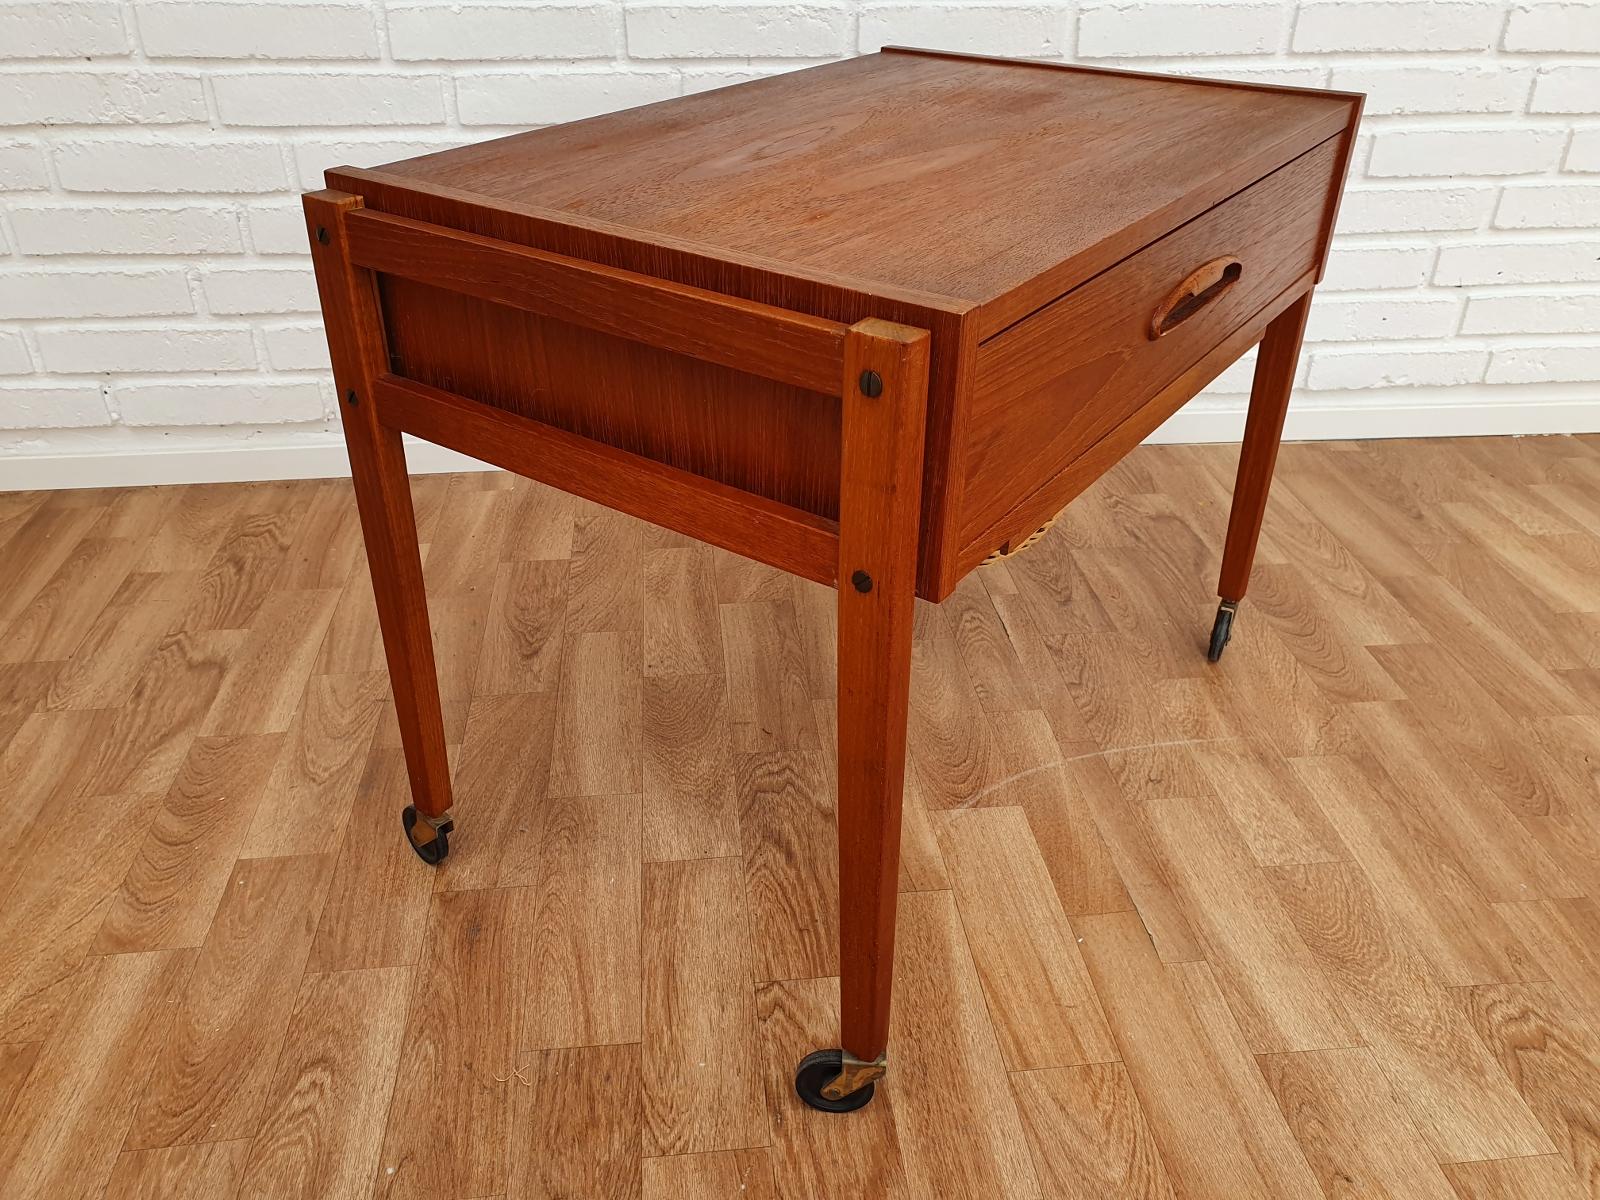 Mid-20th Century Vintage Danish Sewing Table, Teak Wood, 1960s